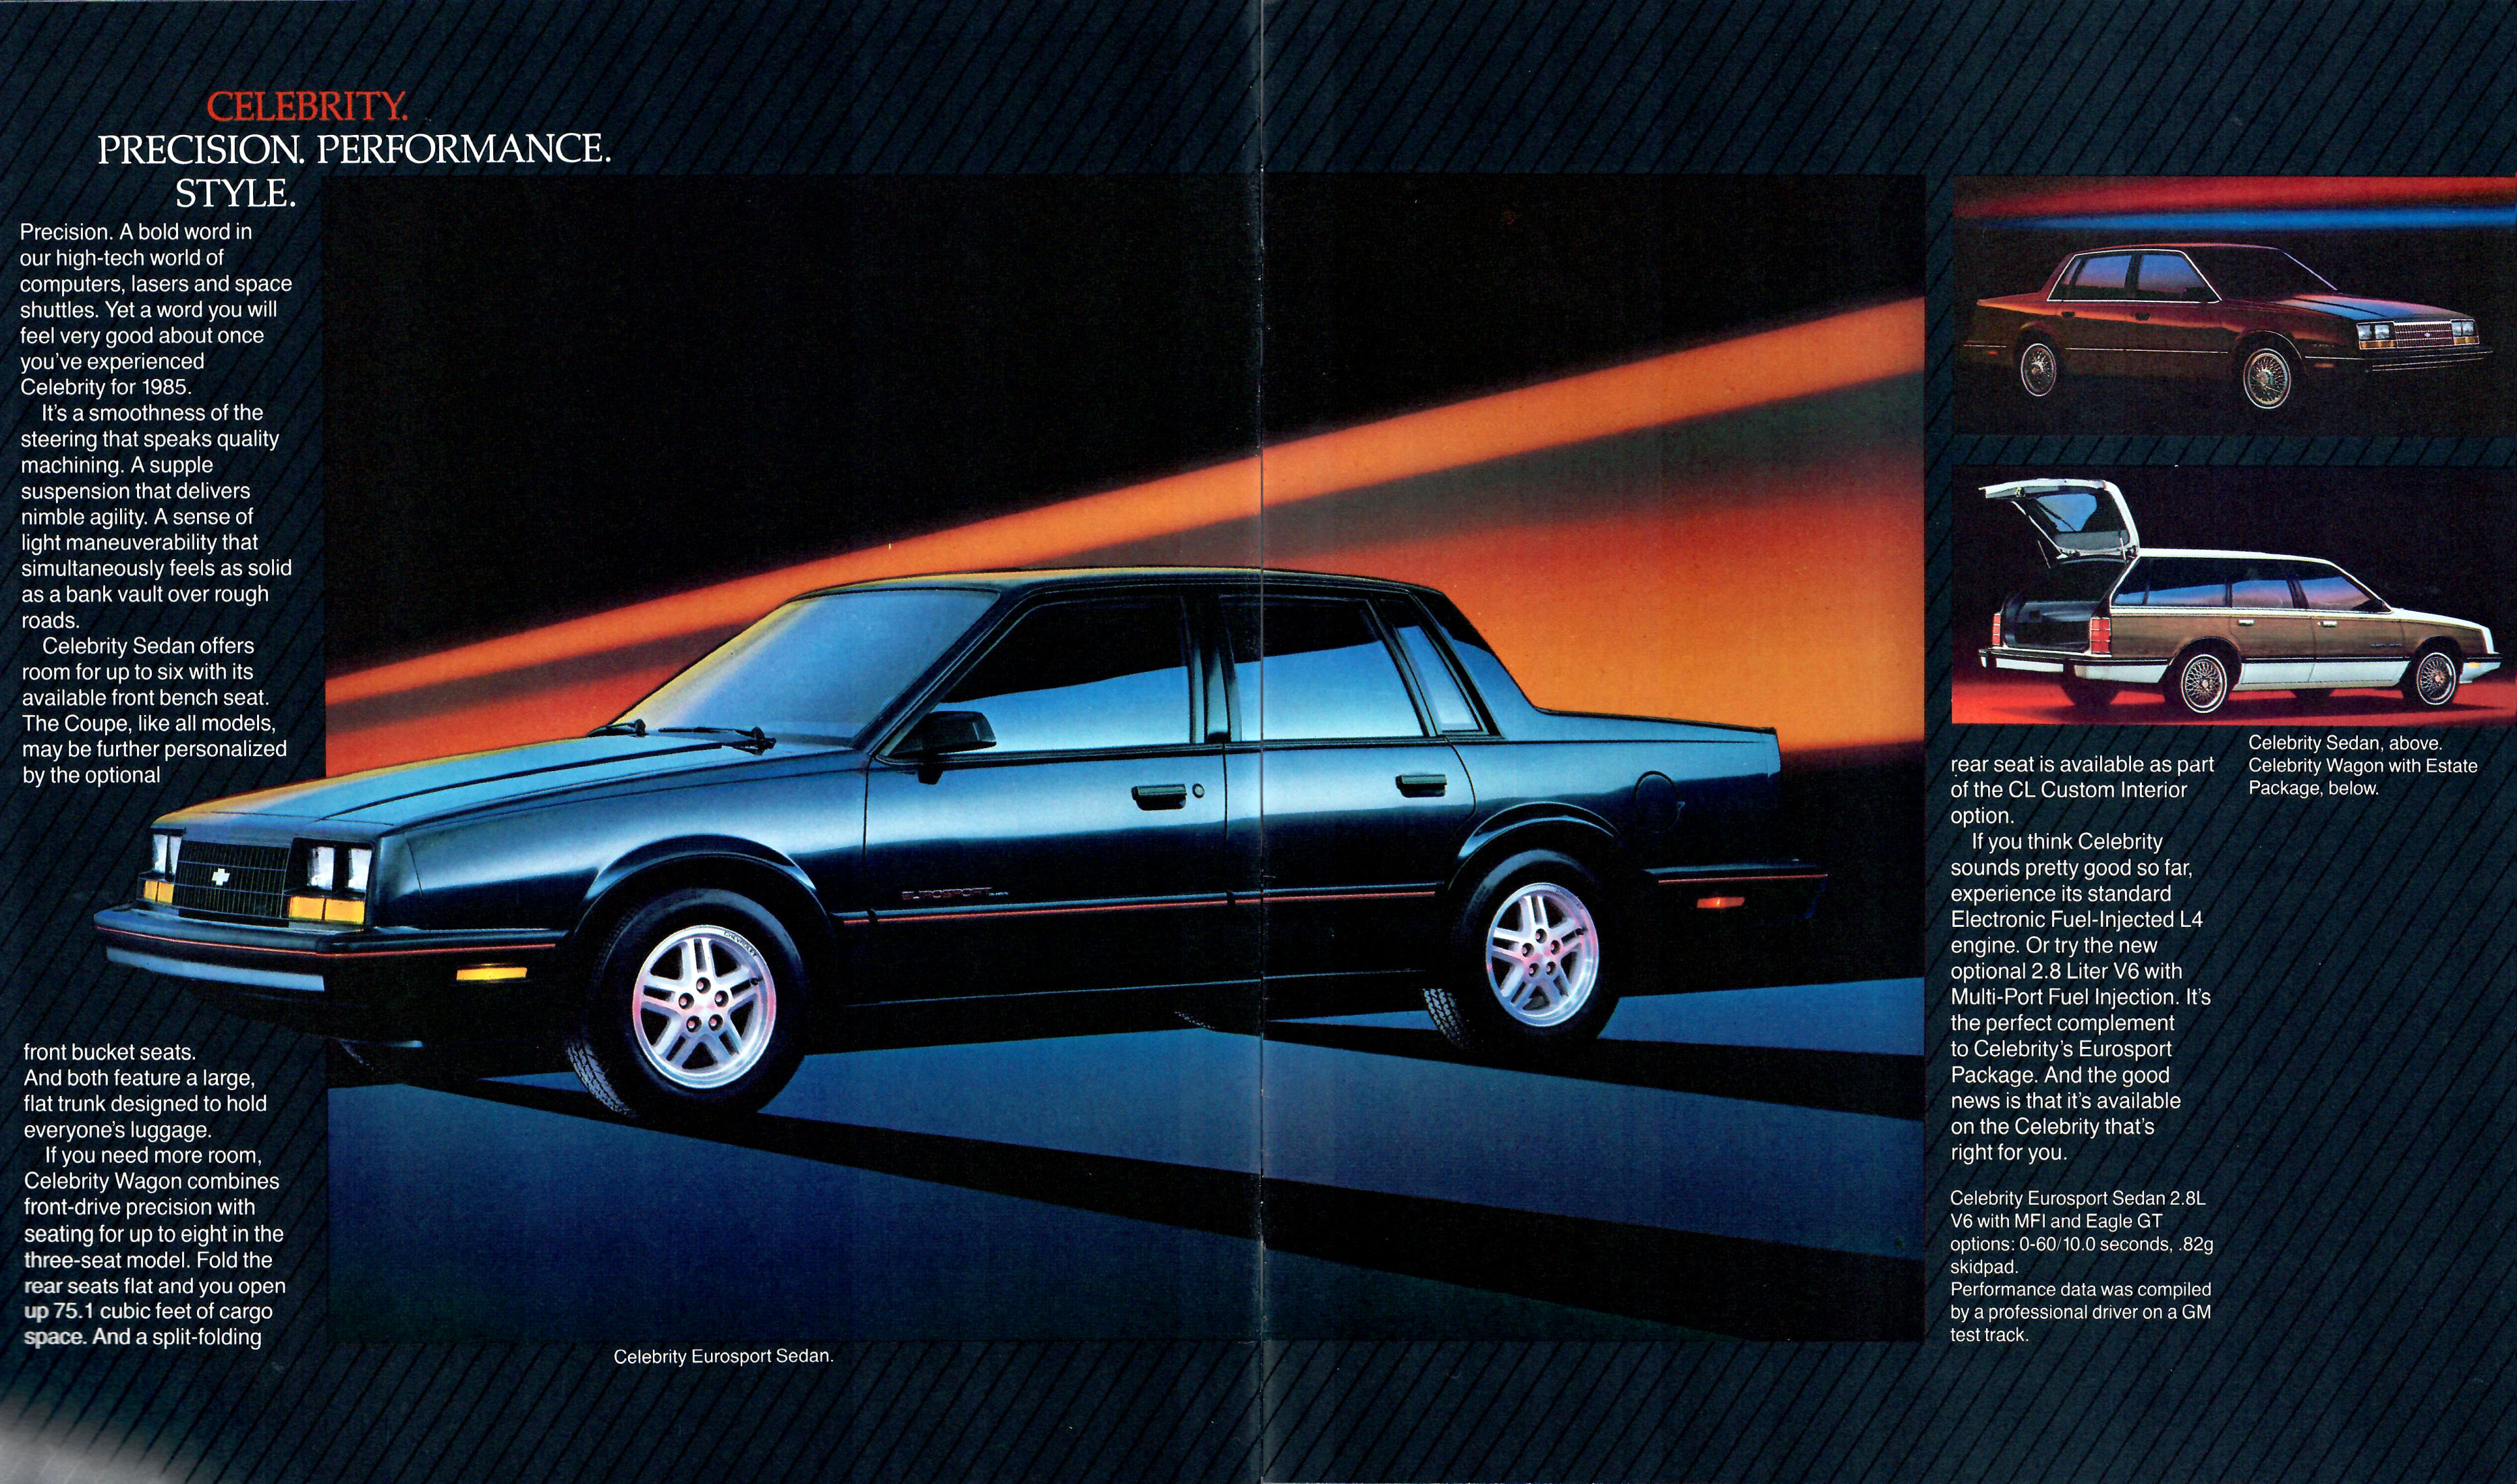 1985 Chevrolet Full Line-04-05